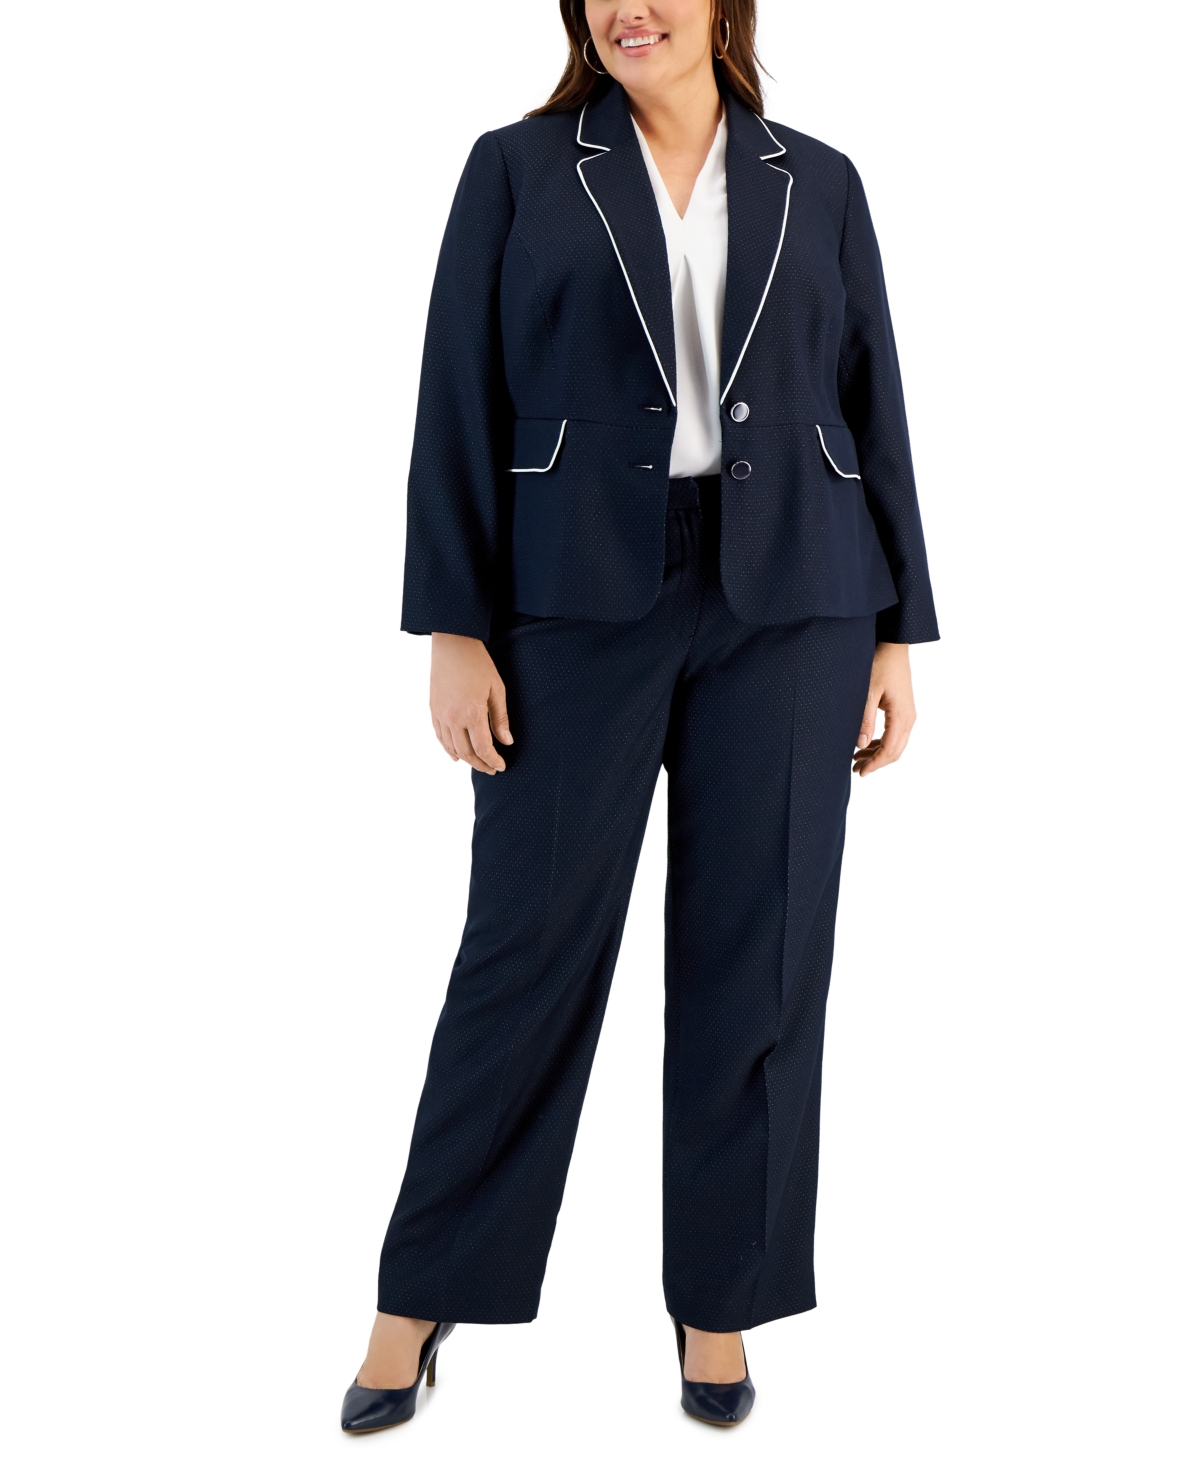 Le Suit Plus Size Contrast-Trimmed Notch Collar Pantsuit